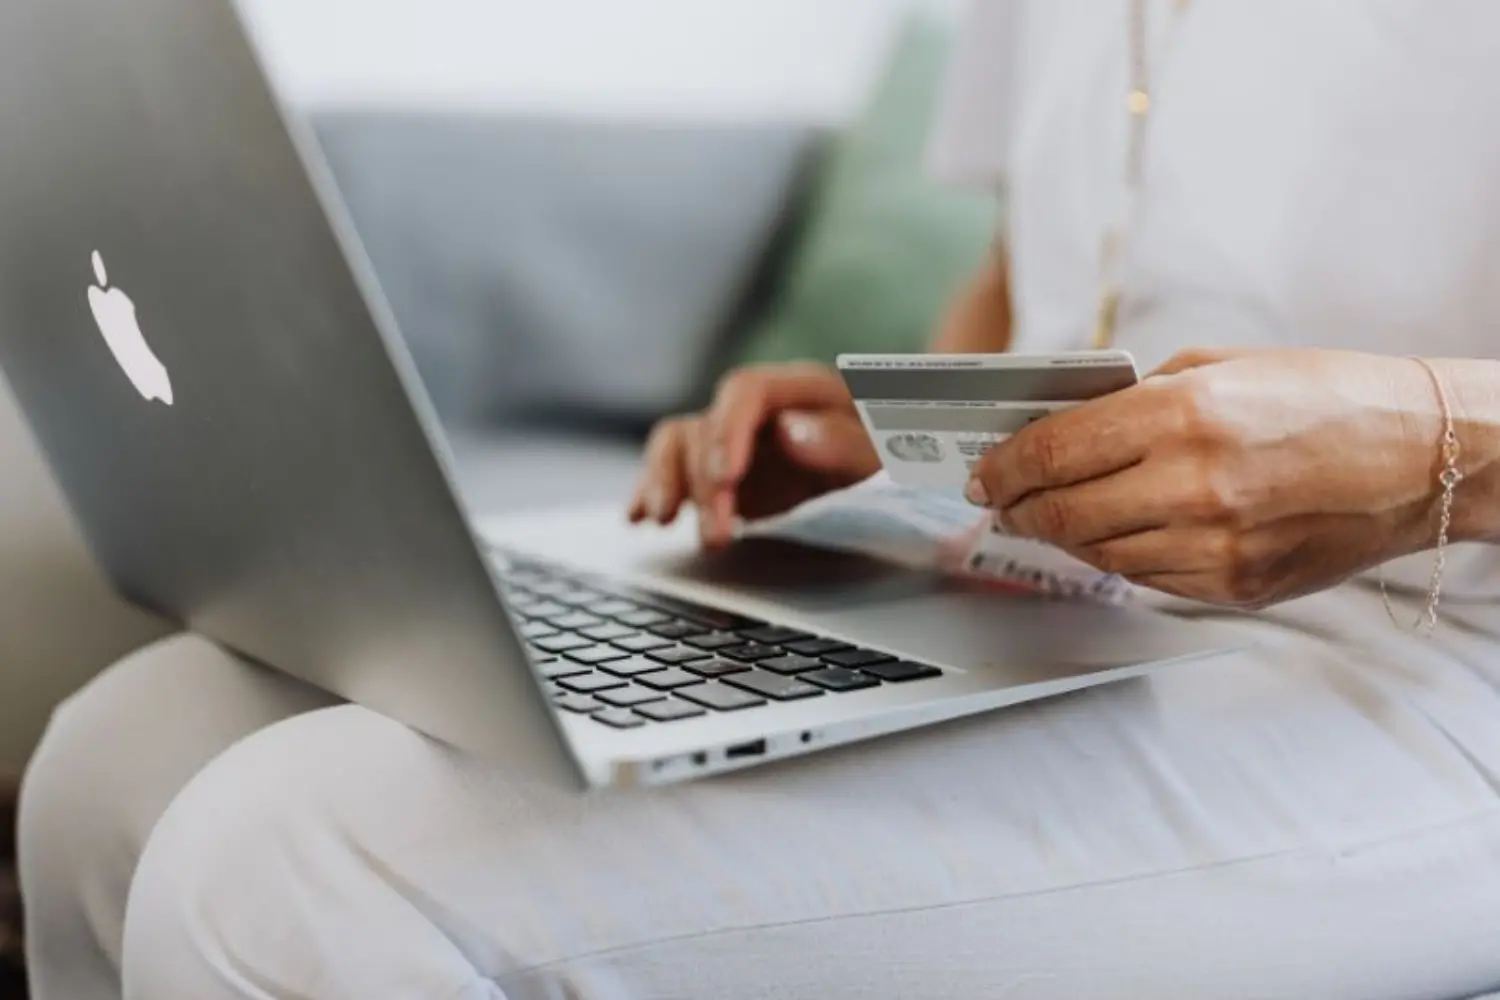 Mua sắm trực tuyến bằng thẻ tín dụng dễ dàng trên các sàn thương mại điện tử